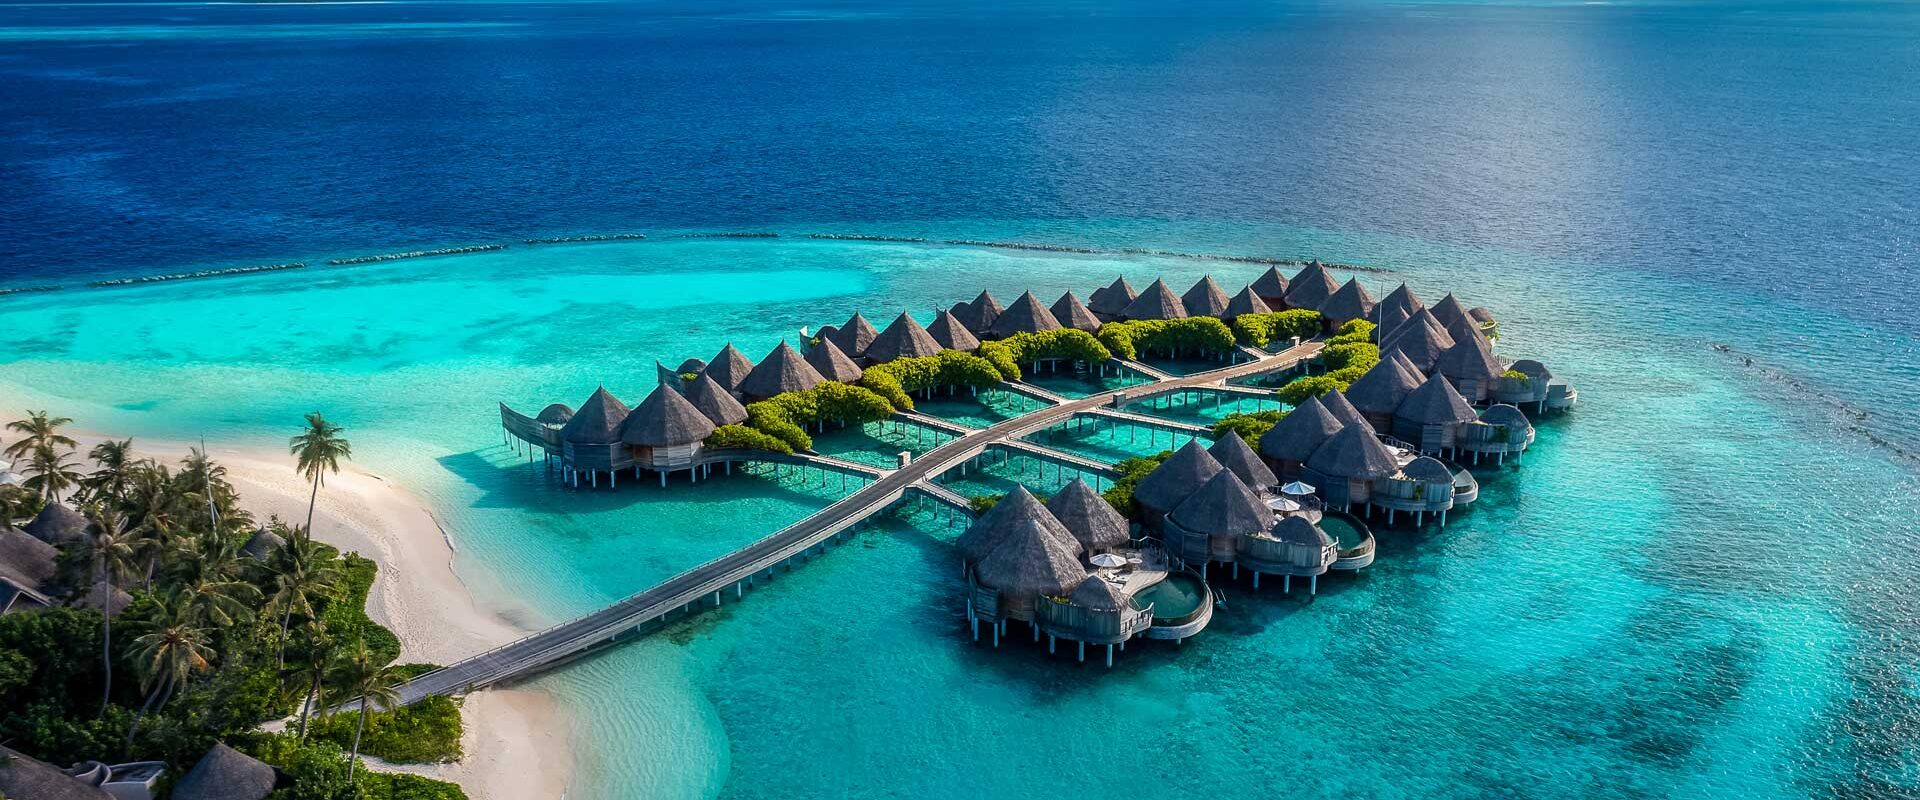 The Nautilus Resort Maldives